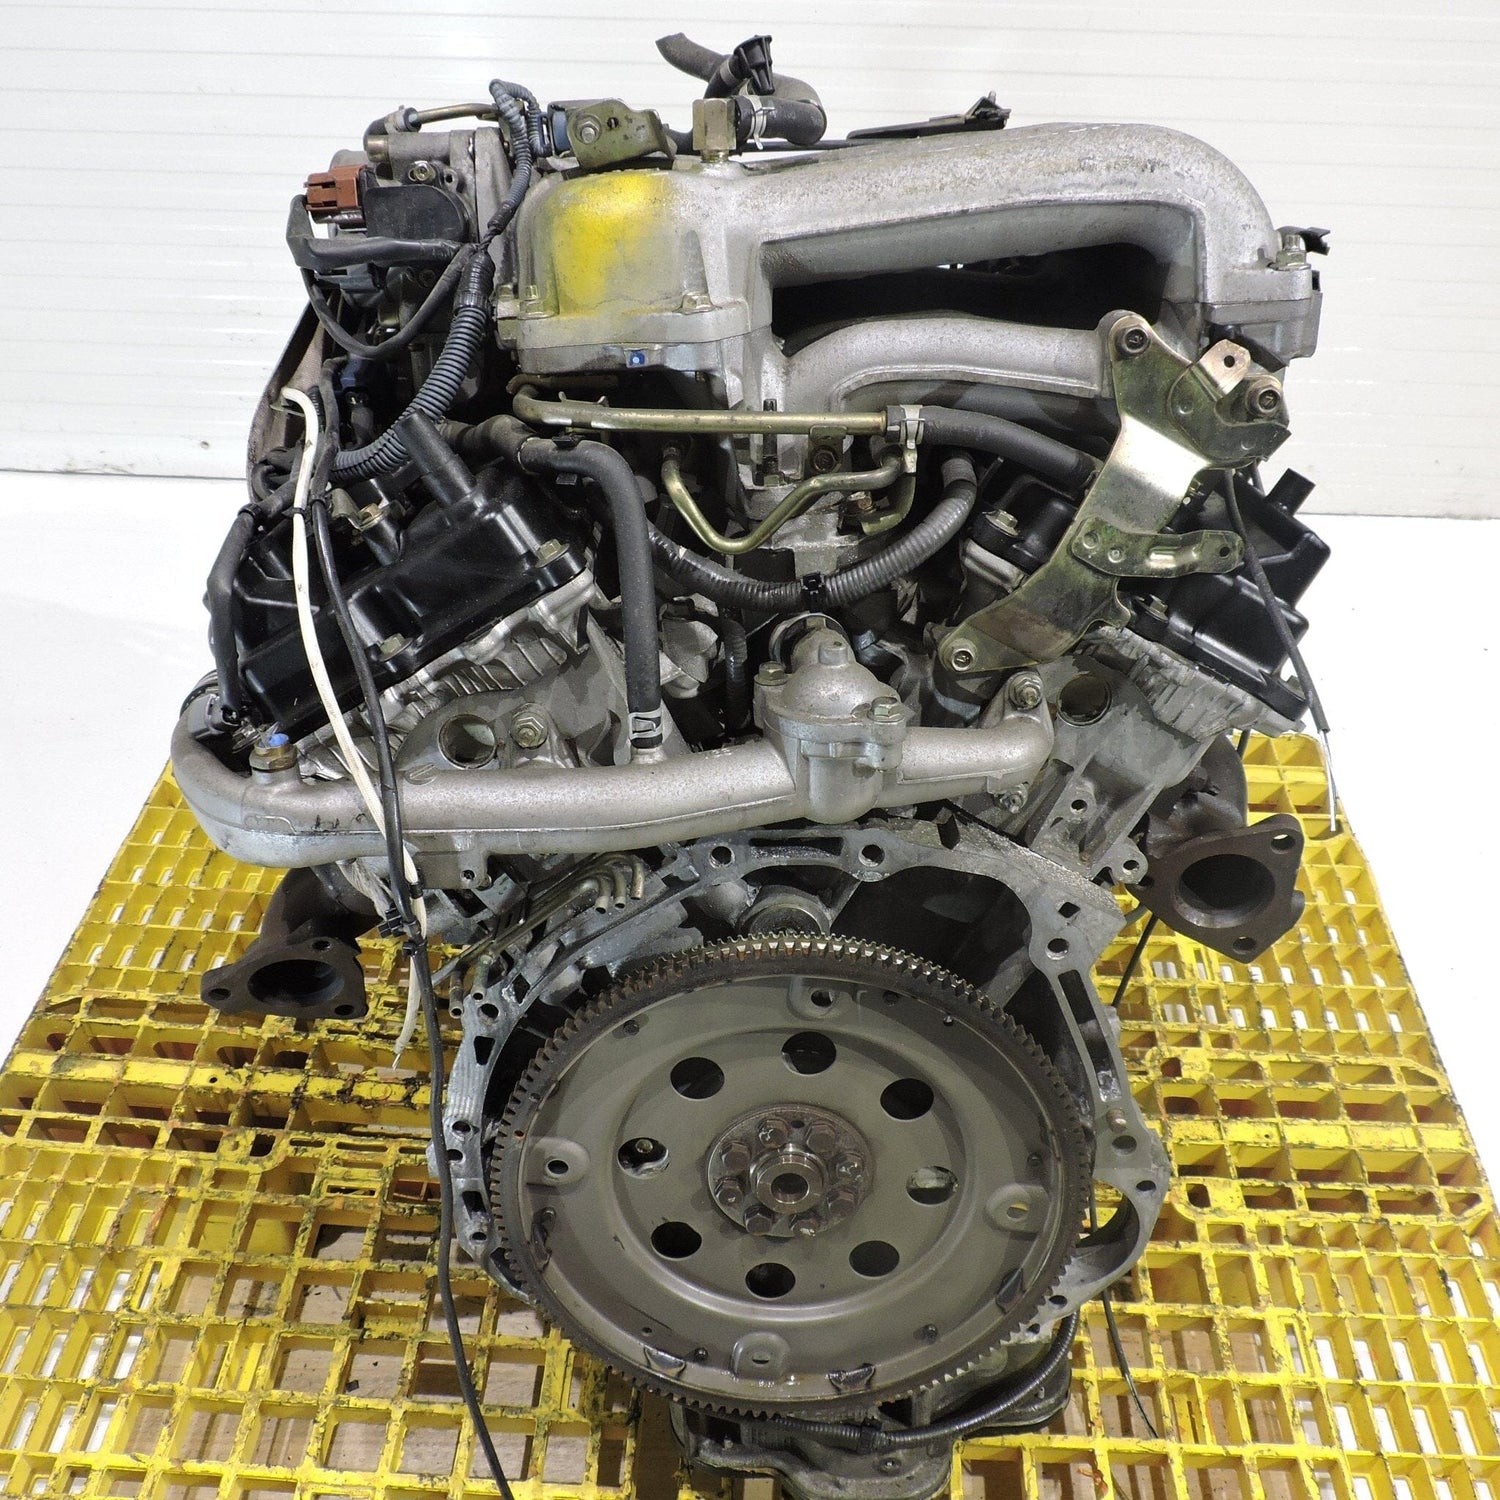 Nissan Pathfinder 2001-2002 3.5L V6 JDM Engine - VQ35DE